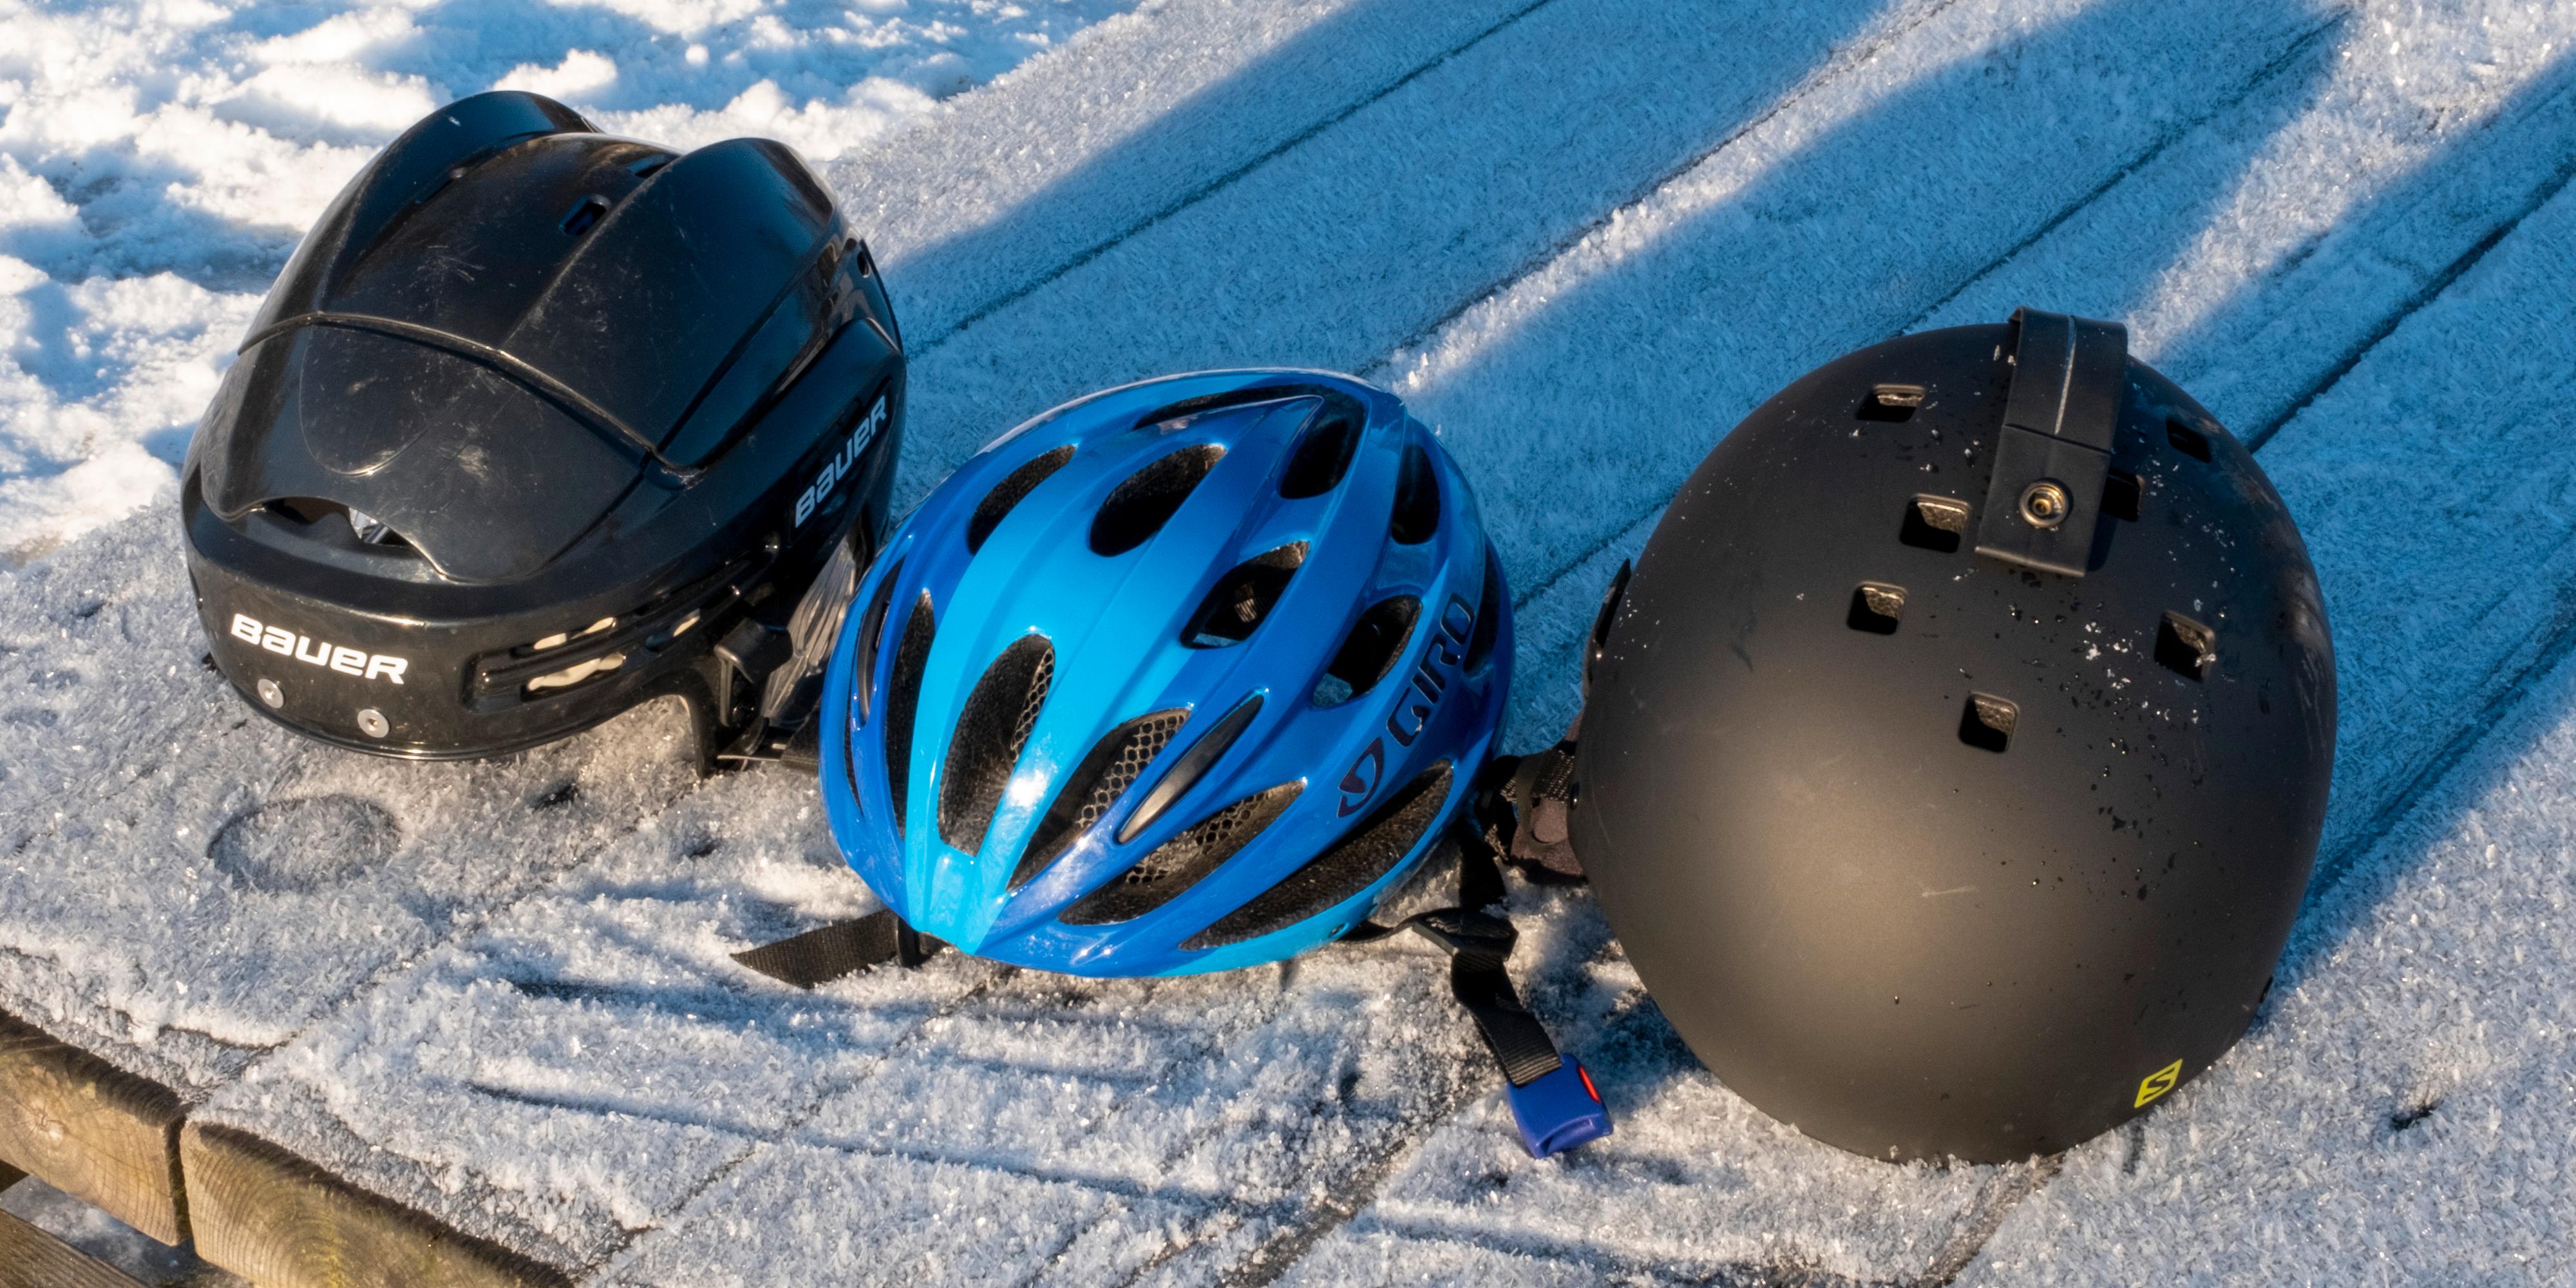 Det finnes mange slags ulike hjelmer, og det viktigste er at de beskytter hodet ditt. Men bruker du for eksempel en snowboard-hjelm vil du holde hodet varmere enn for med en sykkelhjelm.